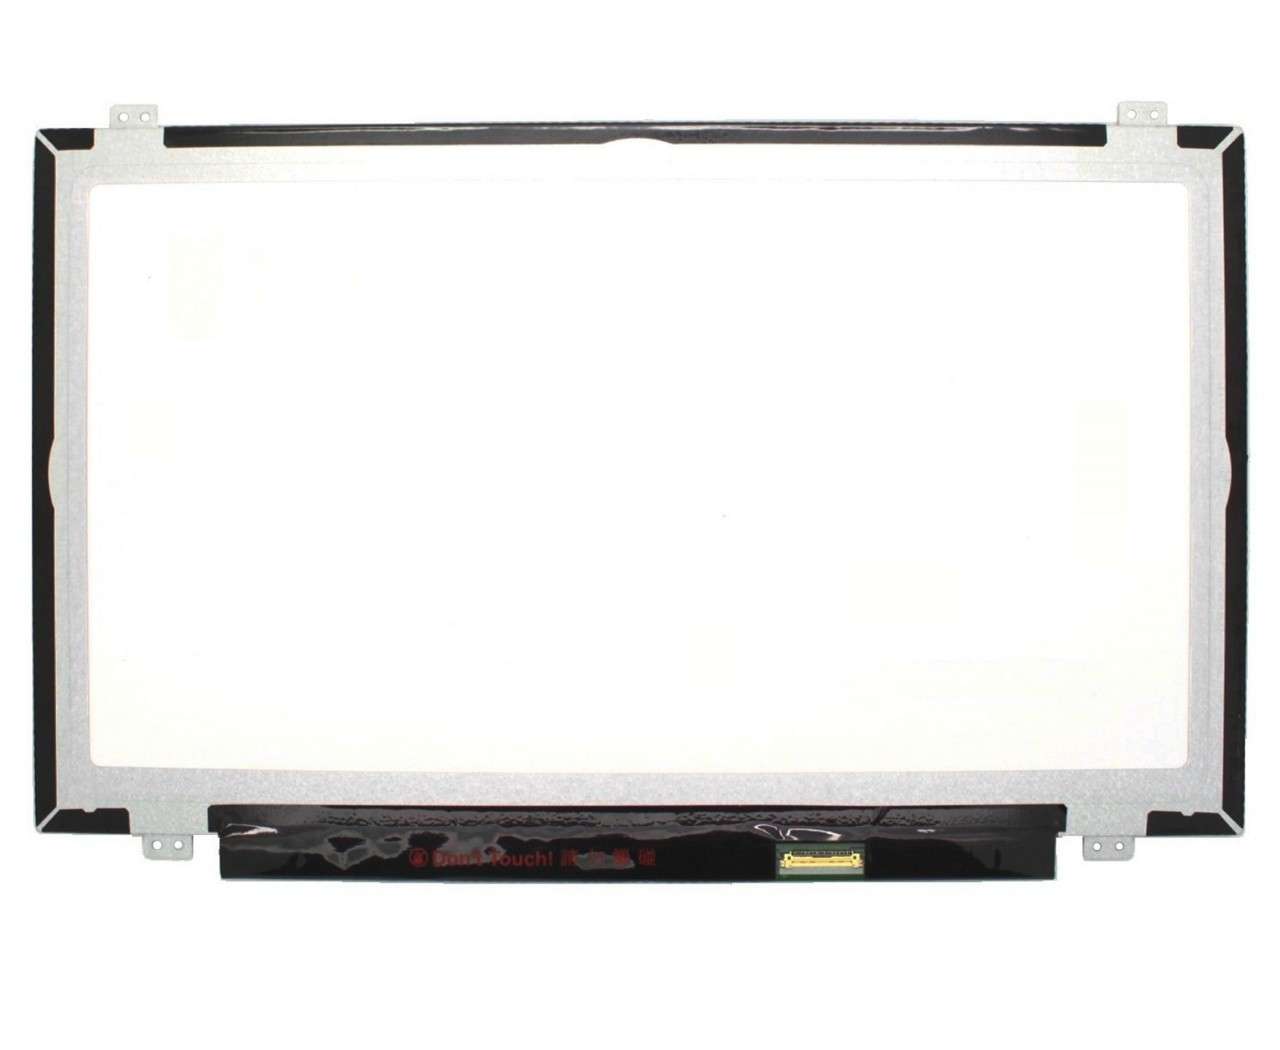 Display laptop Asus R417SA Ecran 14.0 1920×1080 30 pini eDP imagine 2021 ASUS